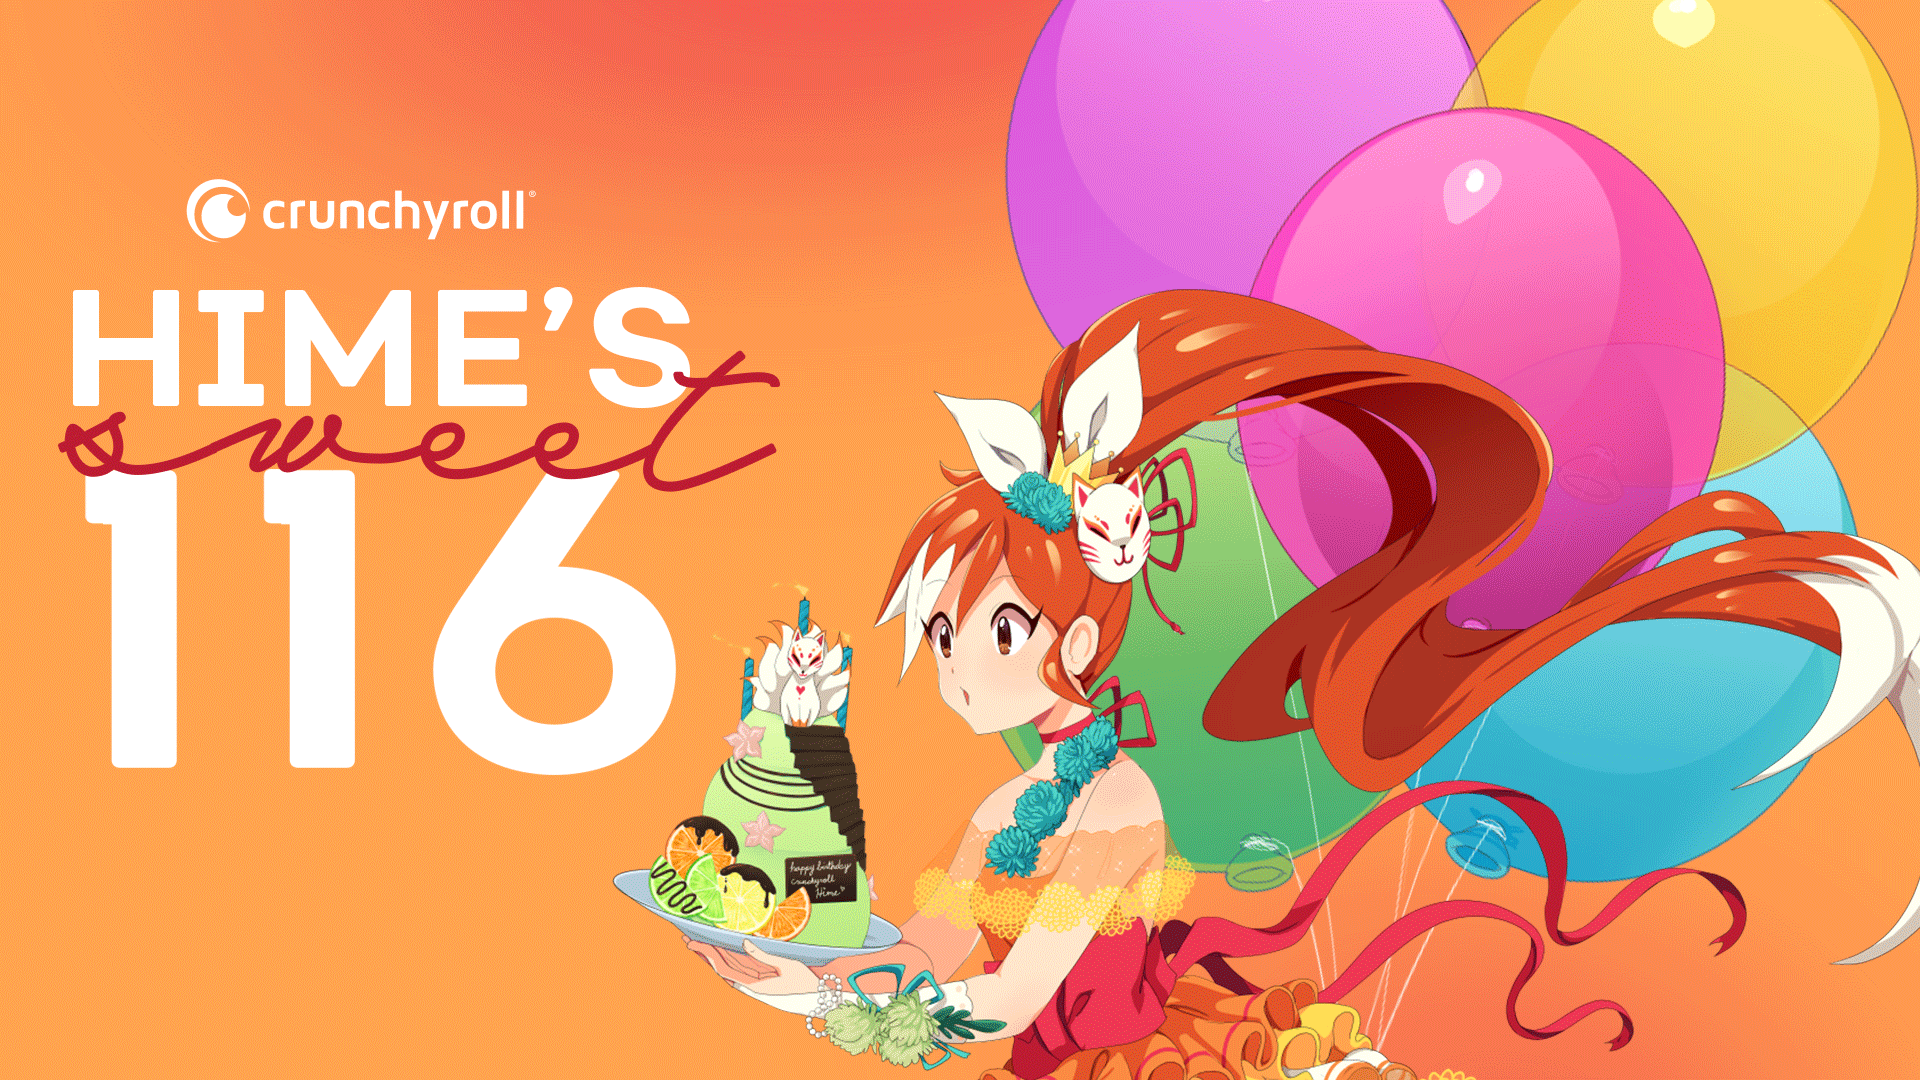 ¡Estás invitado al cumpleaños 116 de Crunchyroll-Hime! #Anime #Crunchyroll